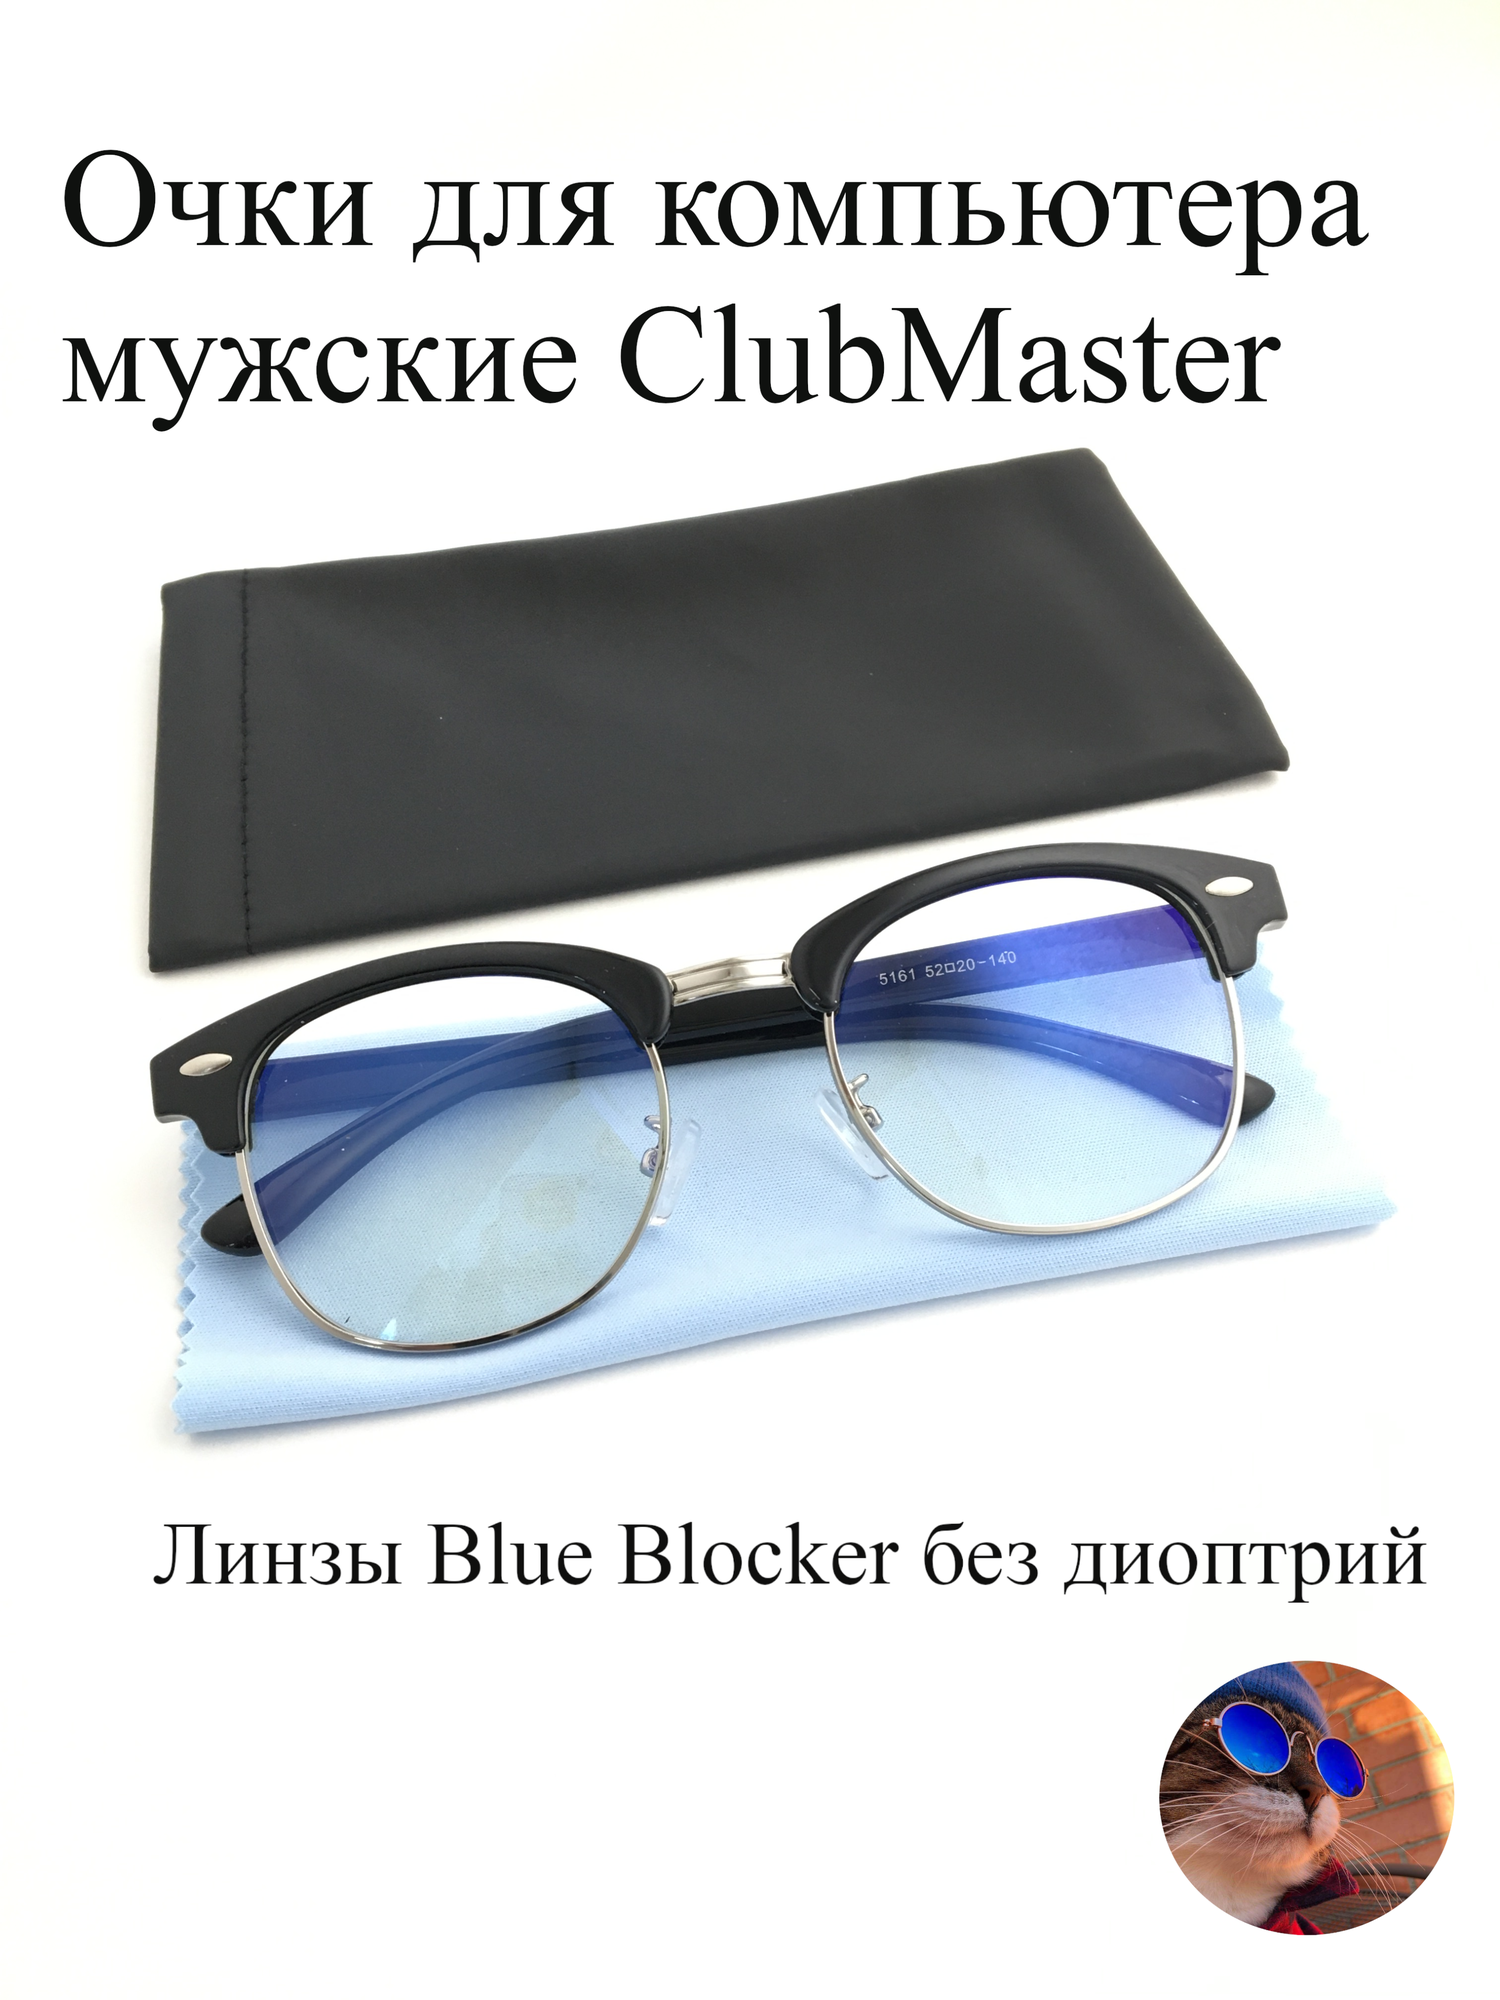 Компьютерные очки для работы с компьютером мужские blue blocker Clubmaster 5161